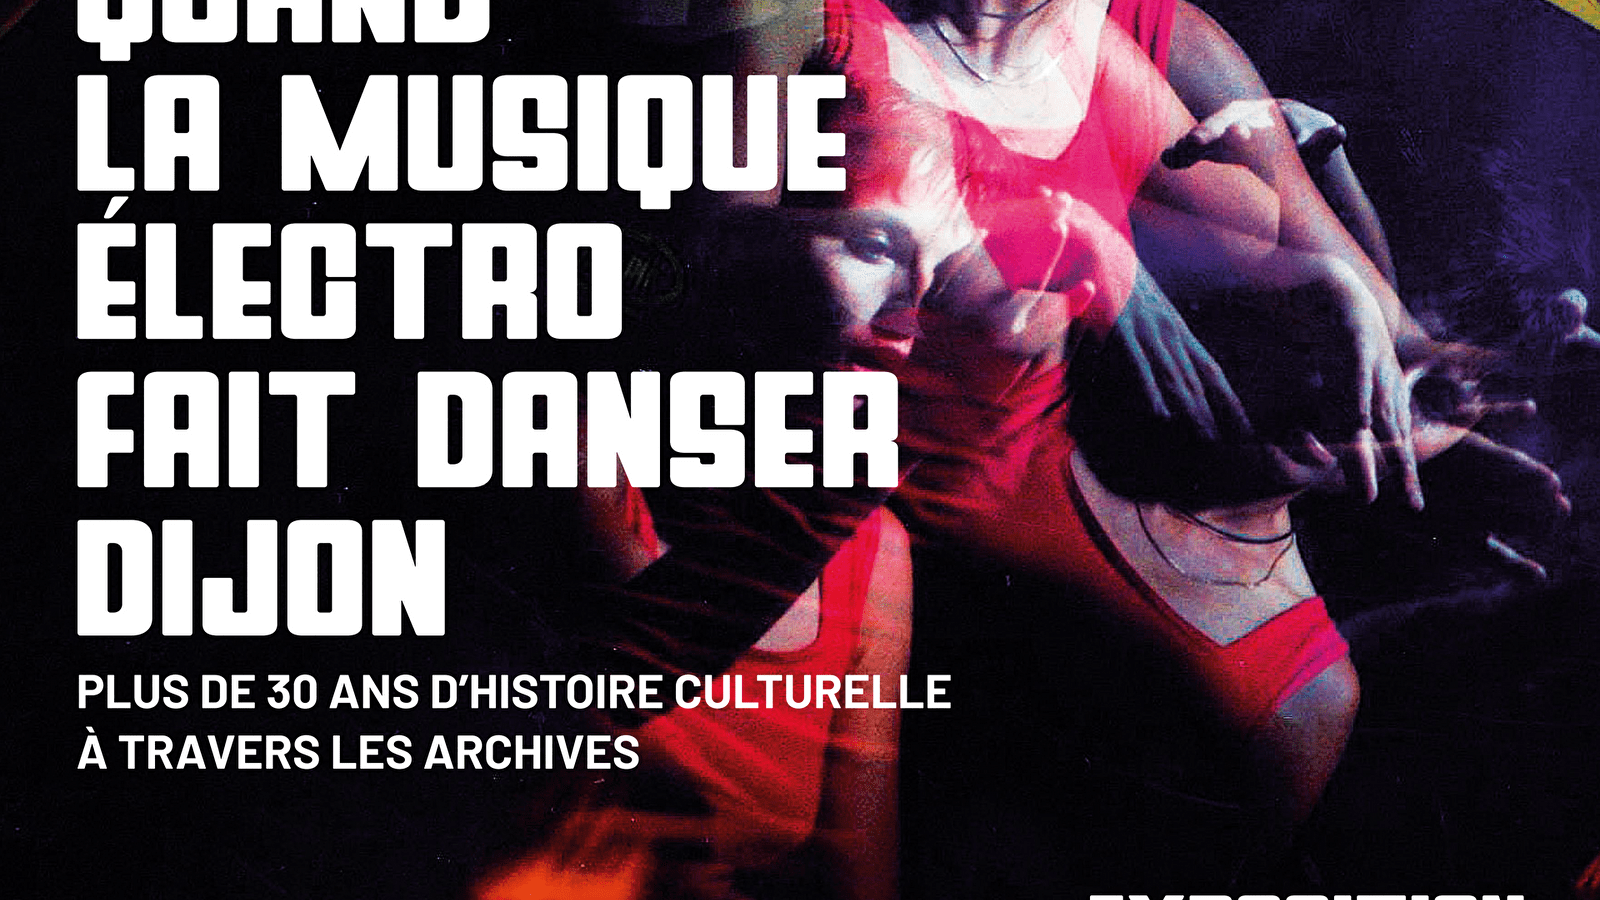 Toen elektromuziek Dijon deed dansen, meer dan 30 jaar cultuurgeschiedenis in de archieven
